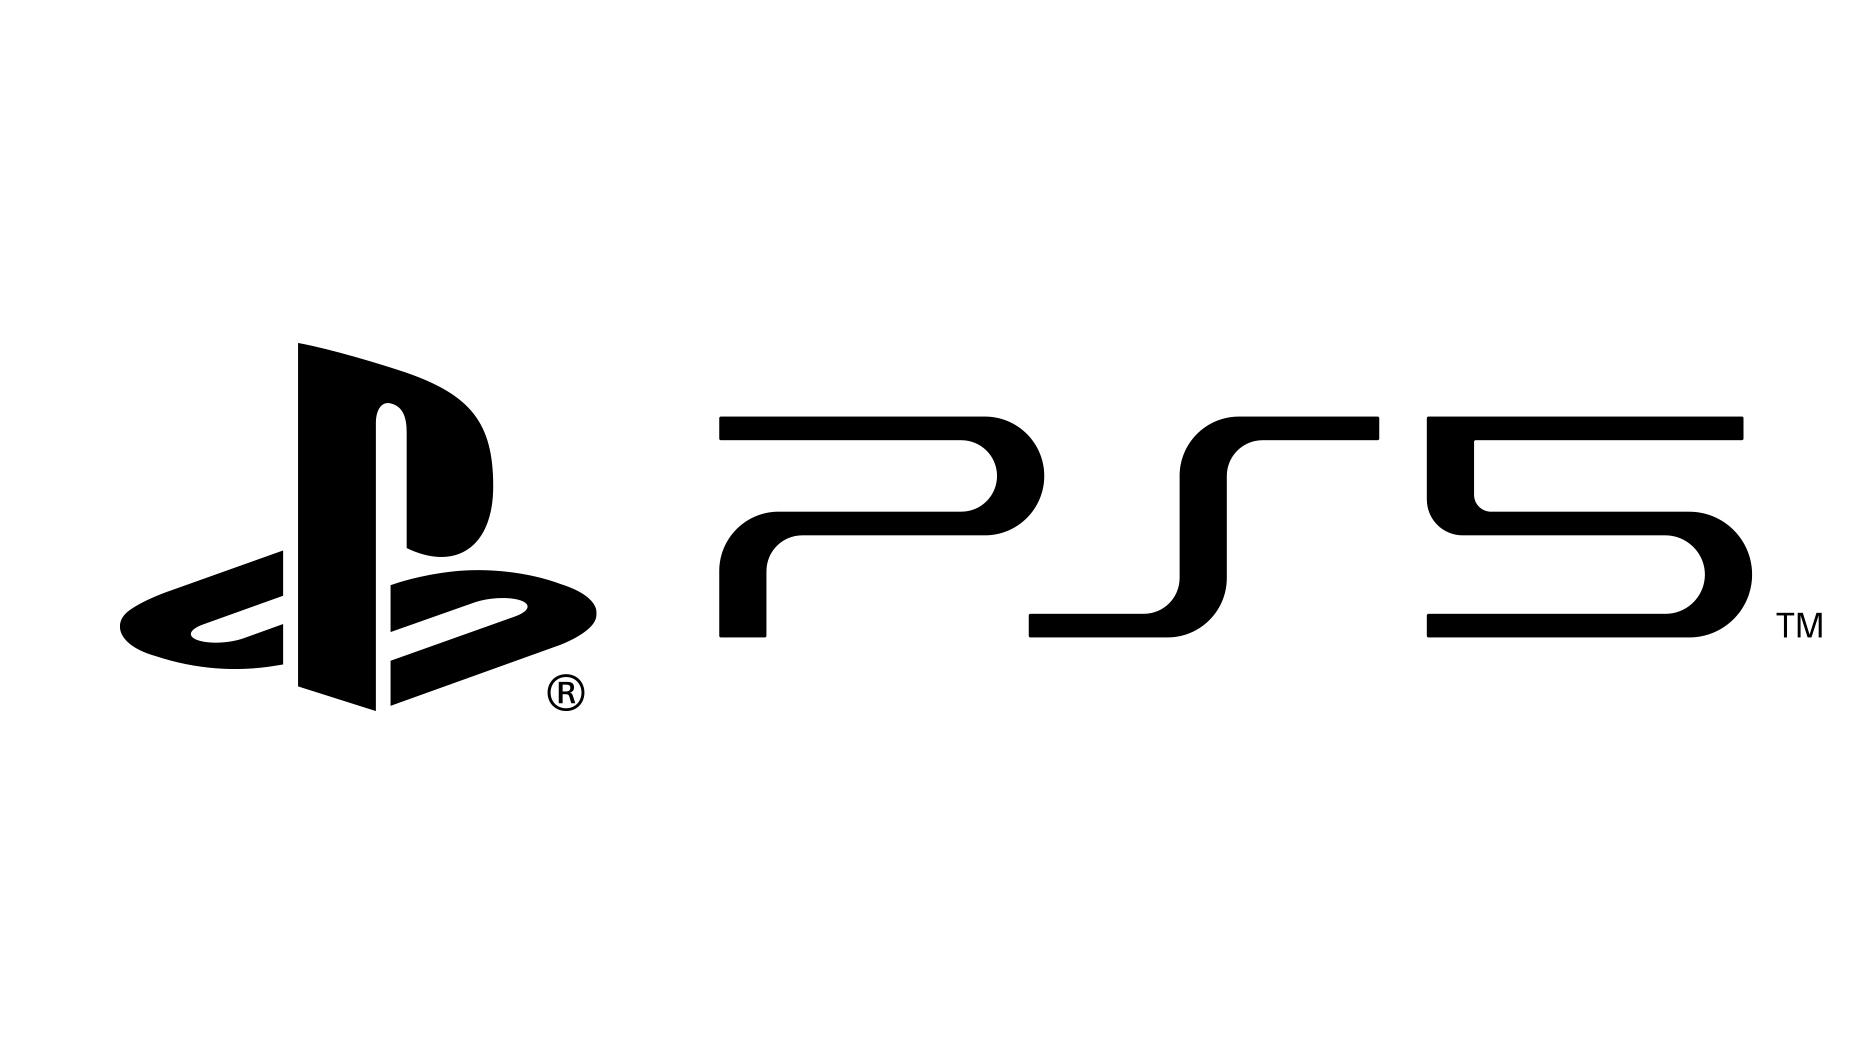 Ps5 logo noir sur blanc